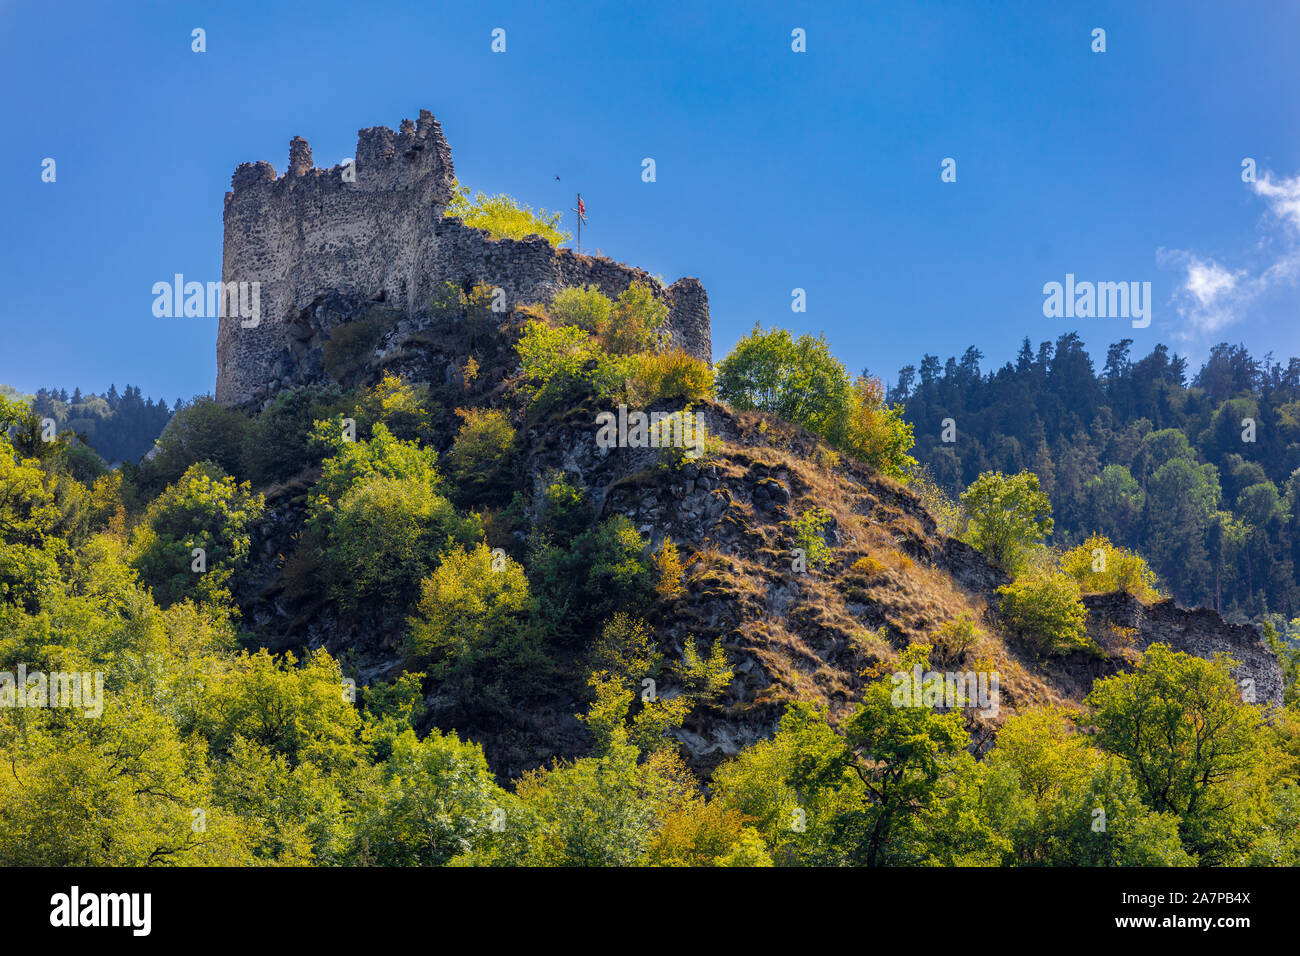 Vue de la forteresse Petre ville thermale de Borjomi Samtskhe Javakheti Géorgie région Europe de l'Est Banque D'Images